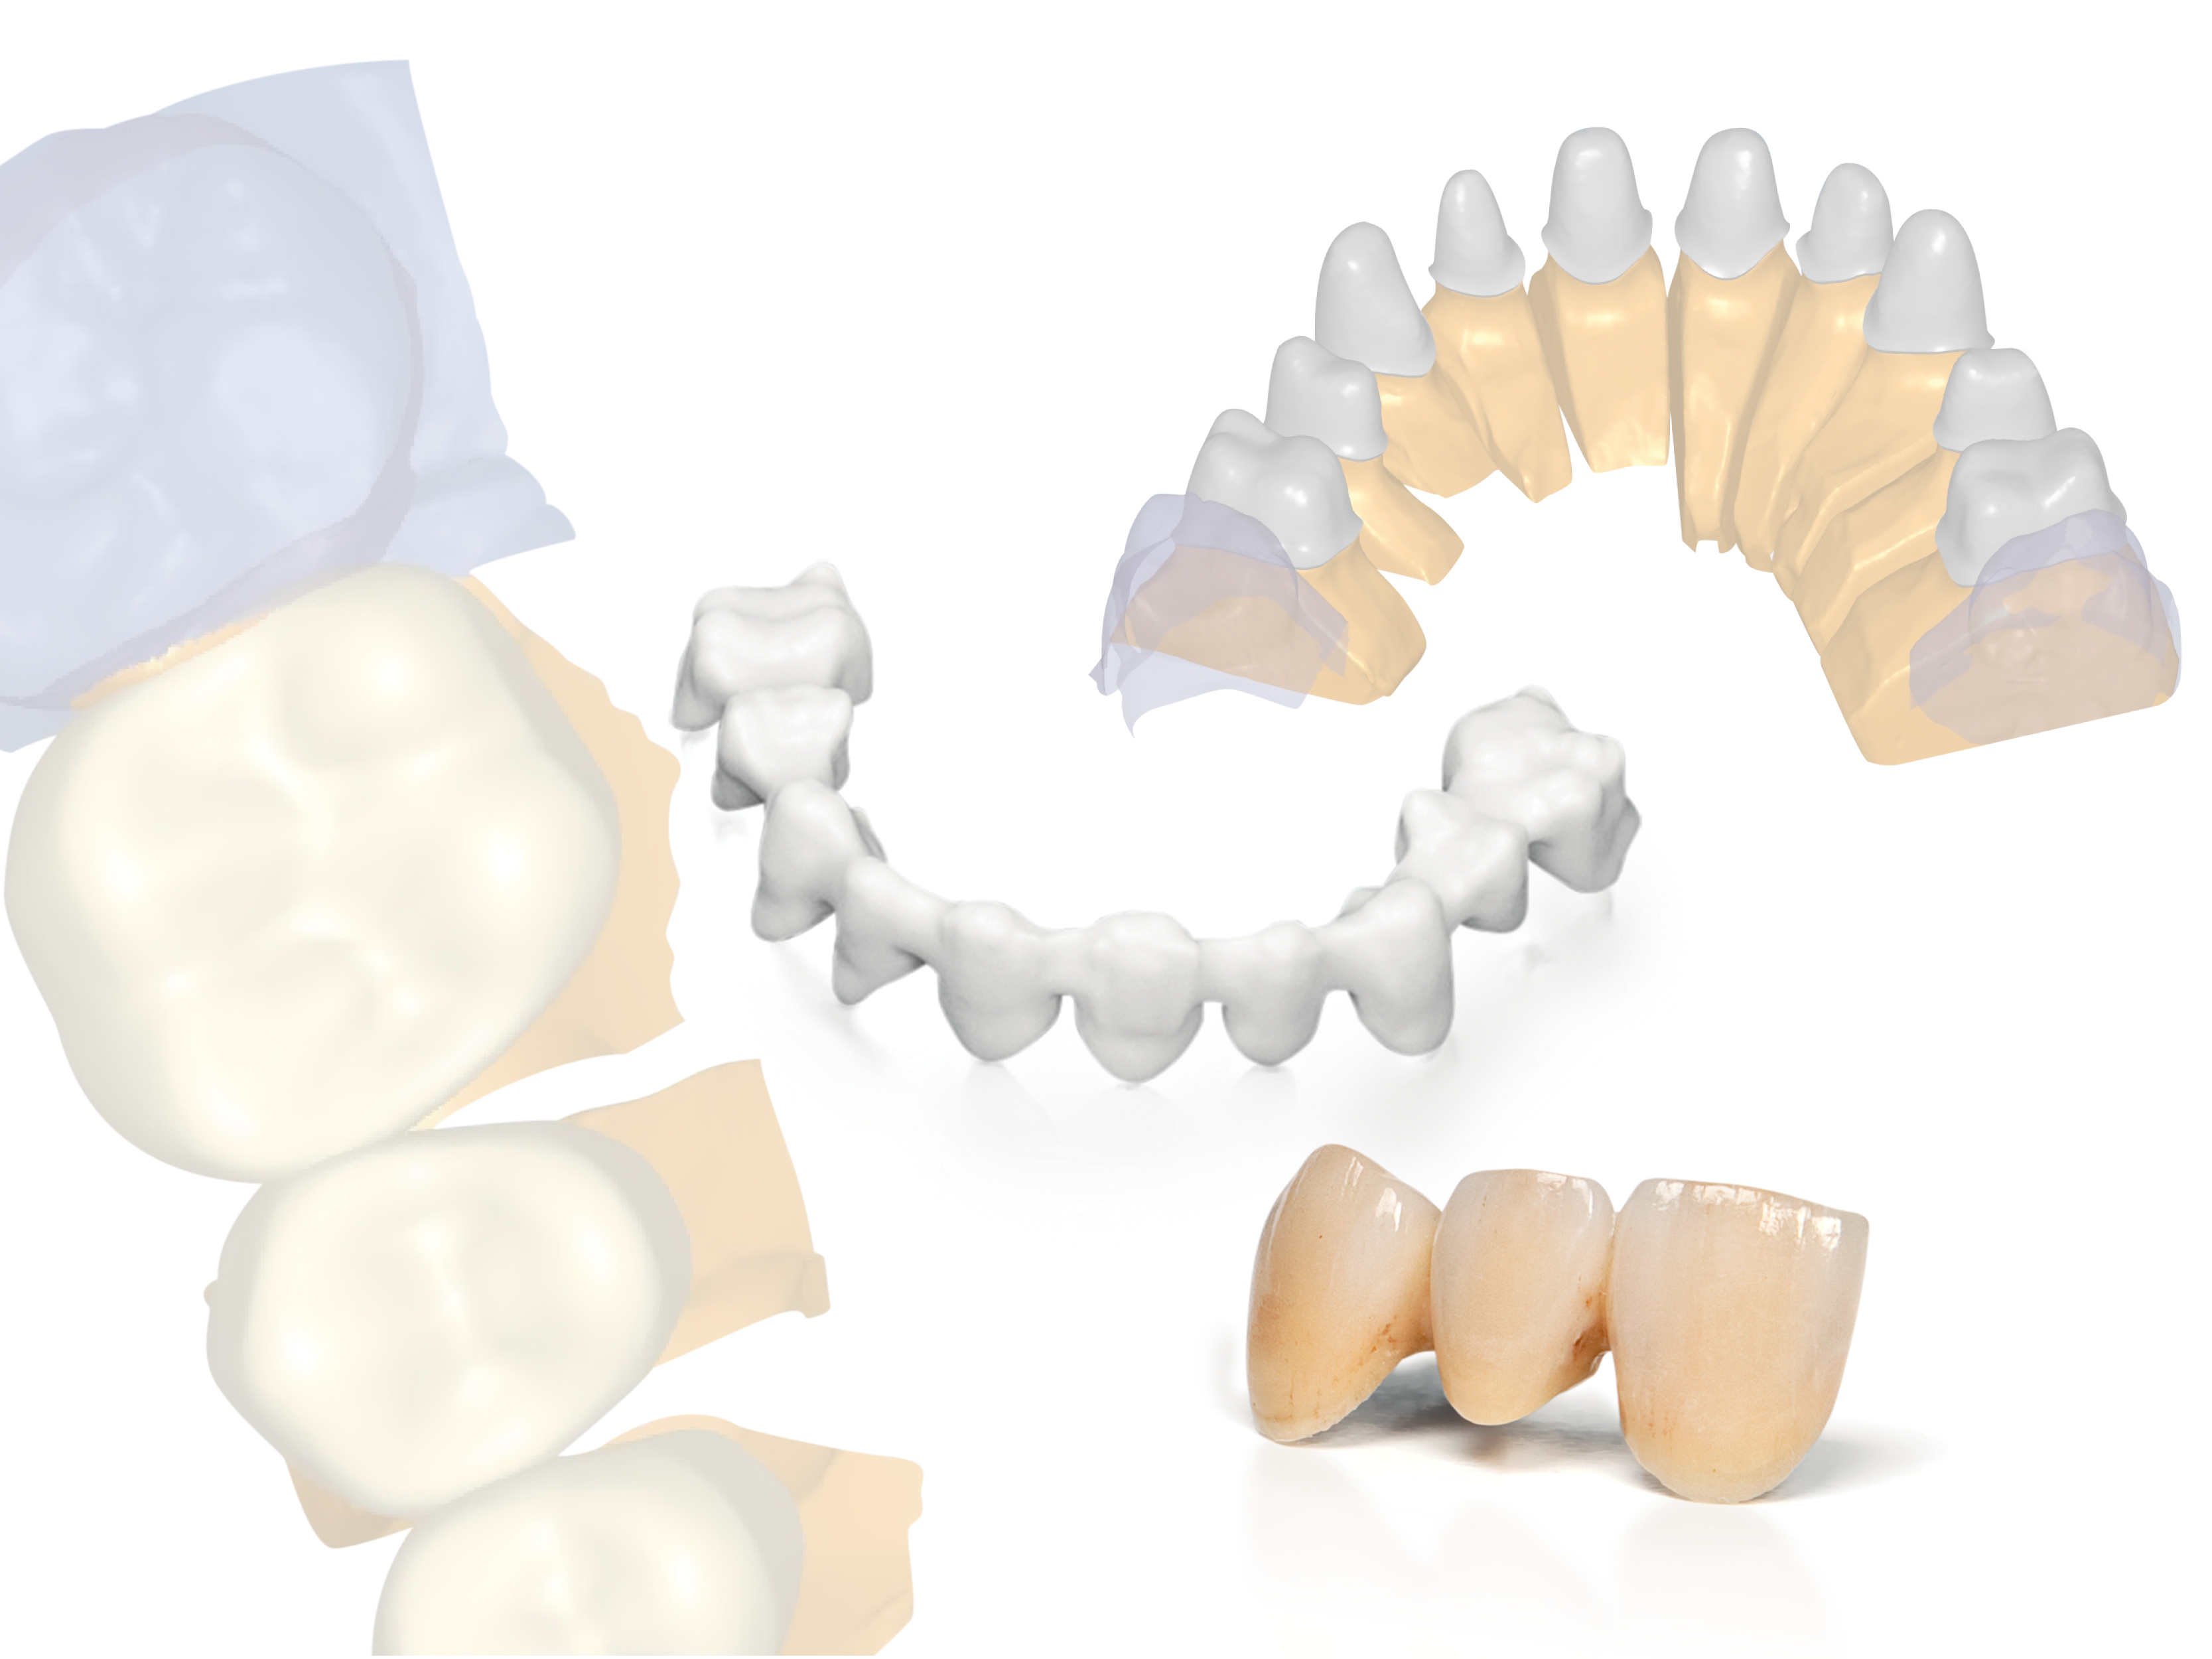 Planmeca tuo uusia avoimia CAD/CAM-ratkaisuja hammaslääkäreille ja -laboratorioille